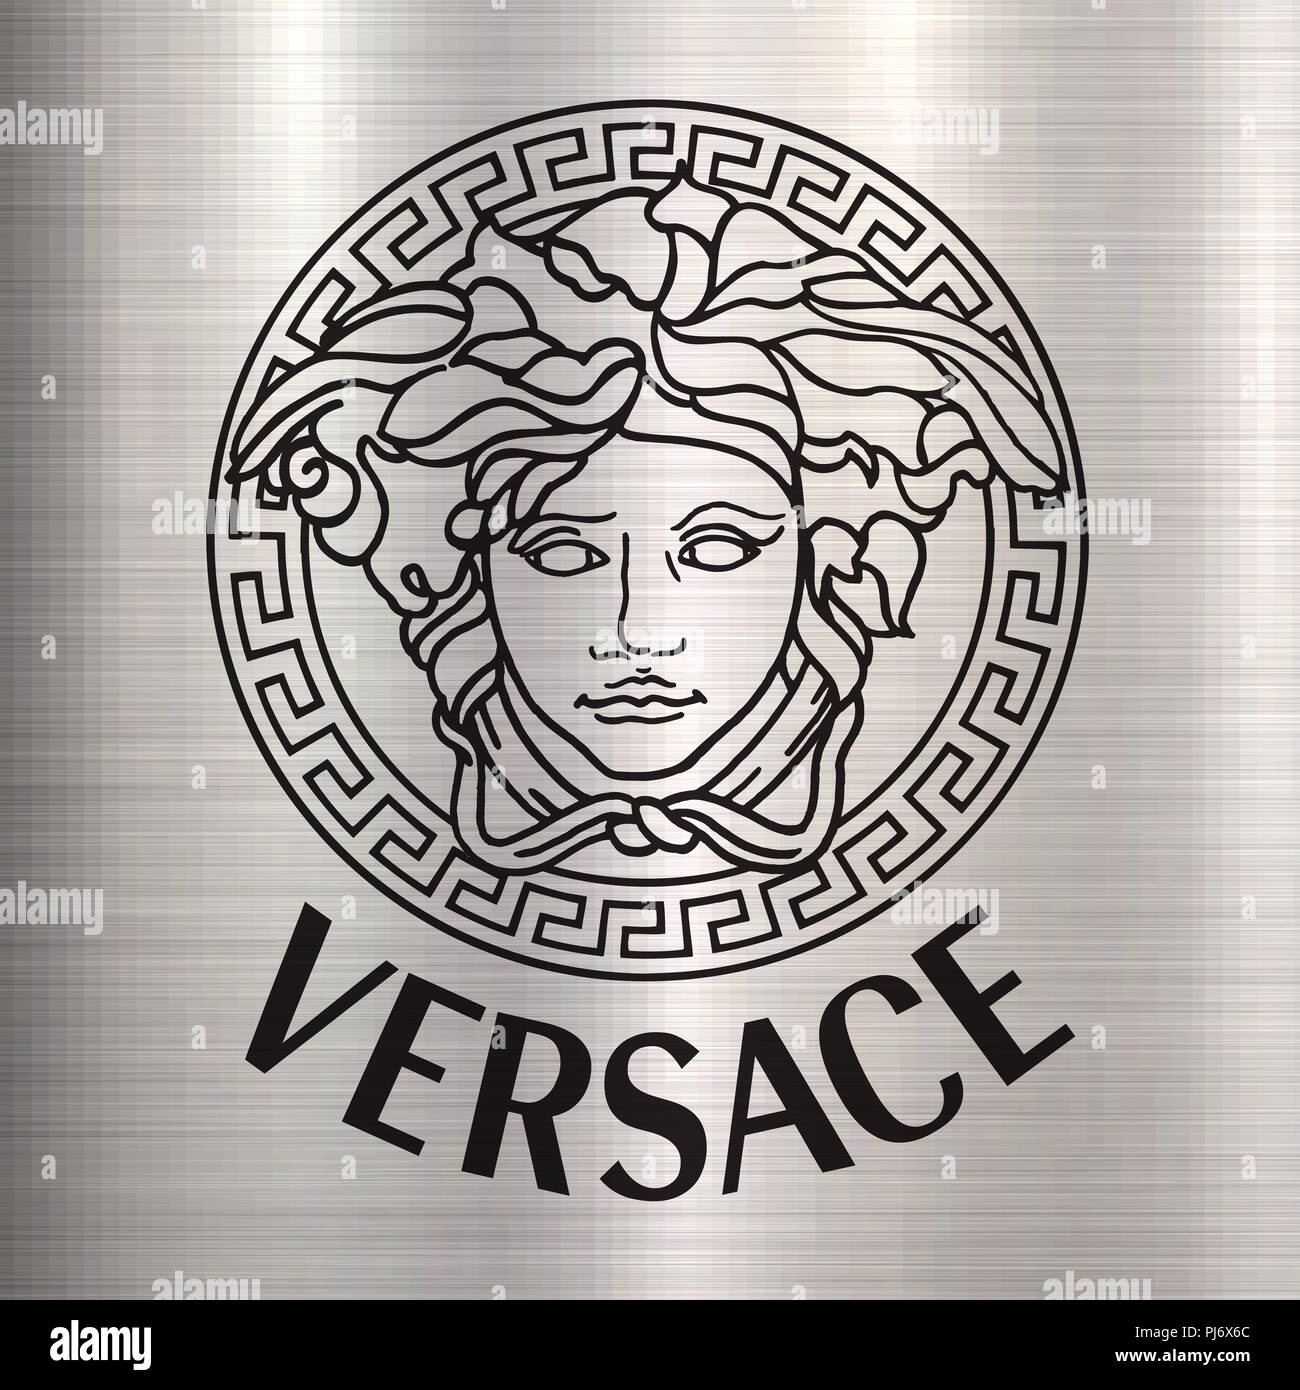 El top 100 imagen cual es el logo de versace - Abzlocal.mx